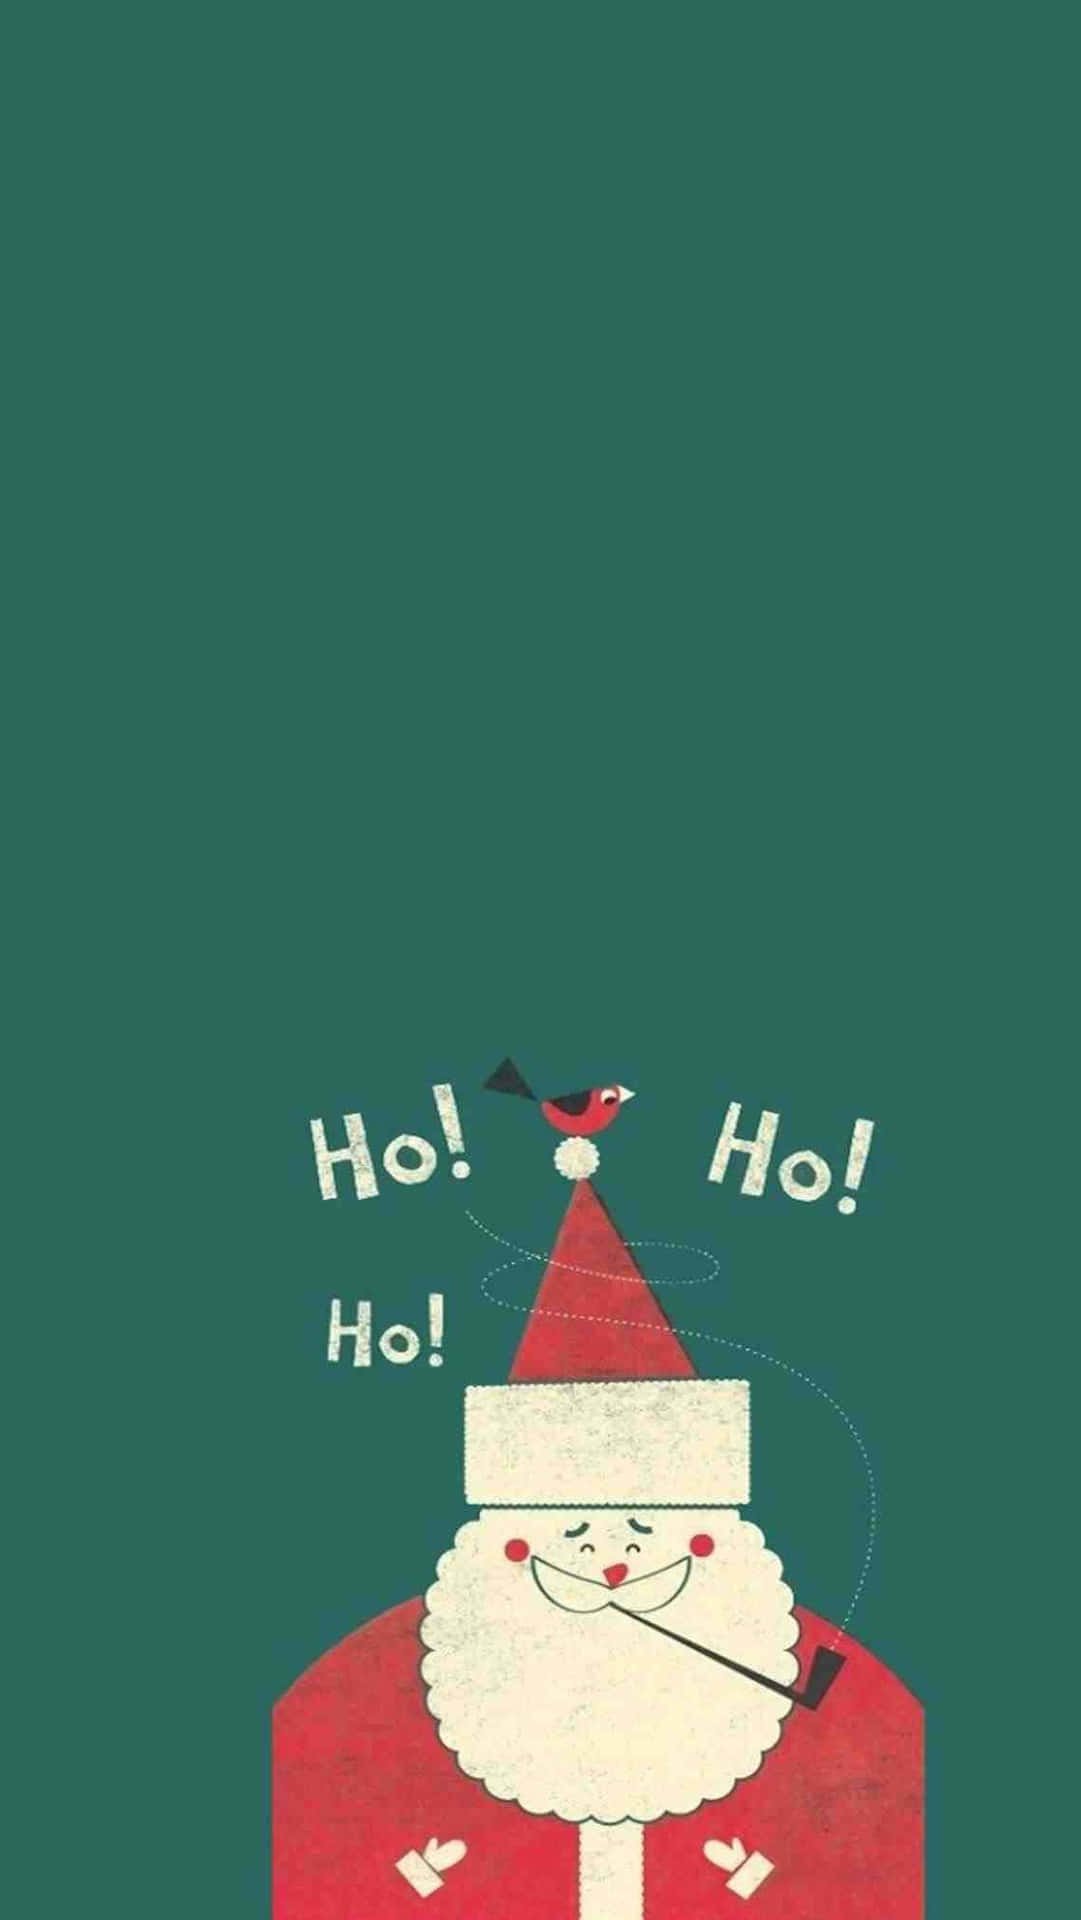 100+] Tumblr Christmas Wallpapers